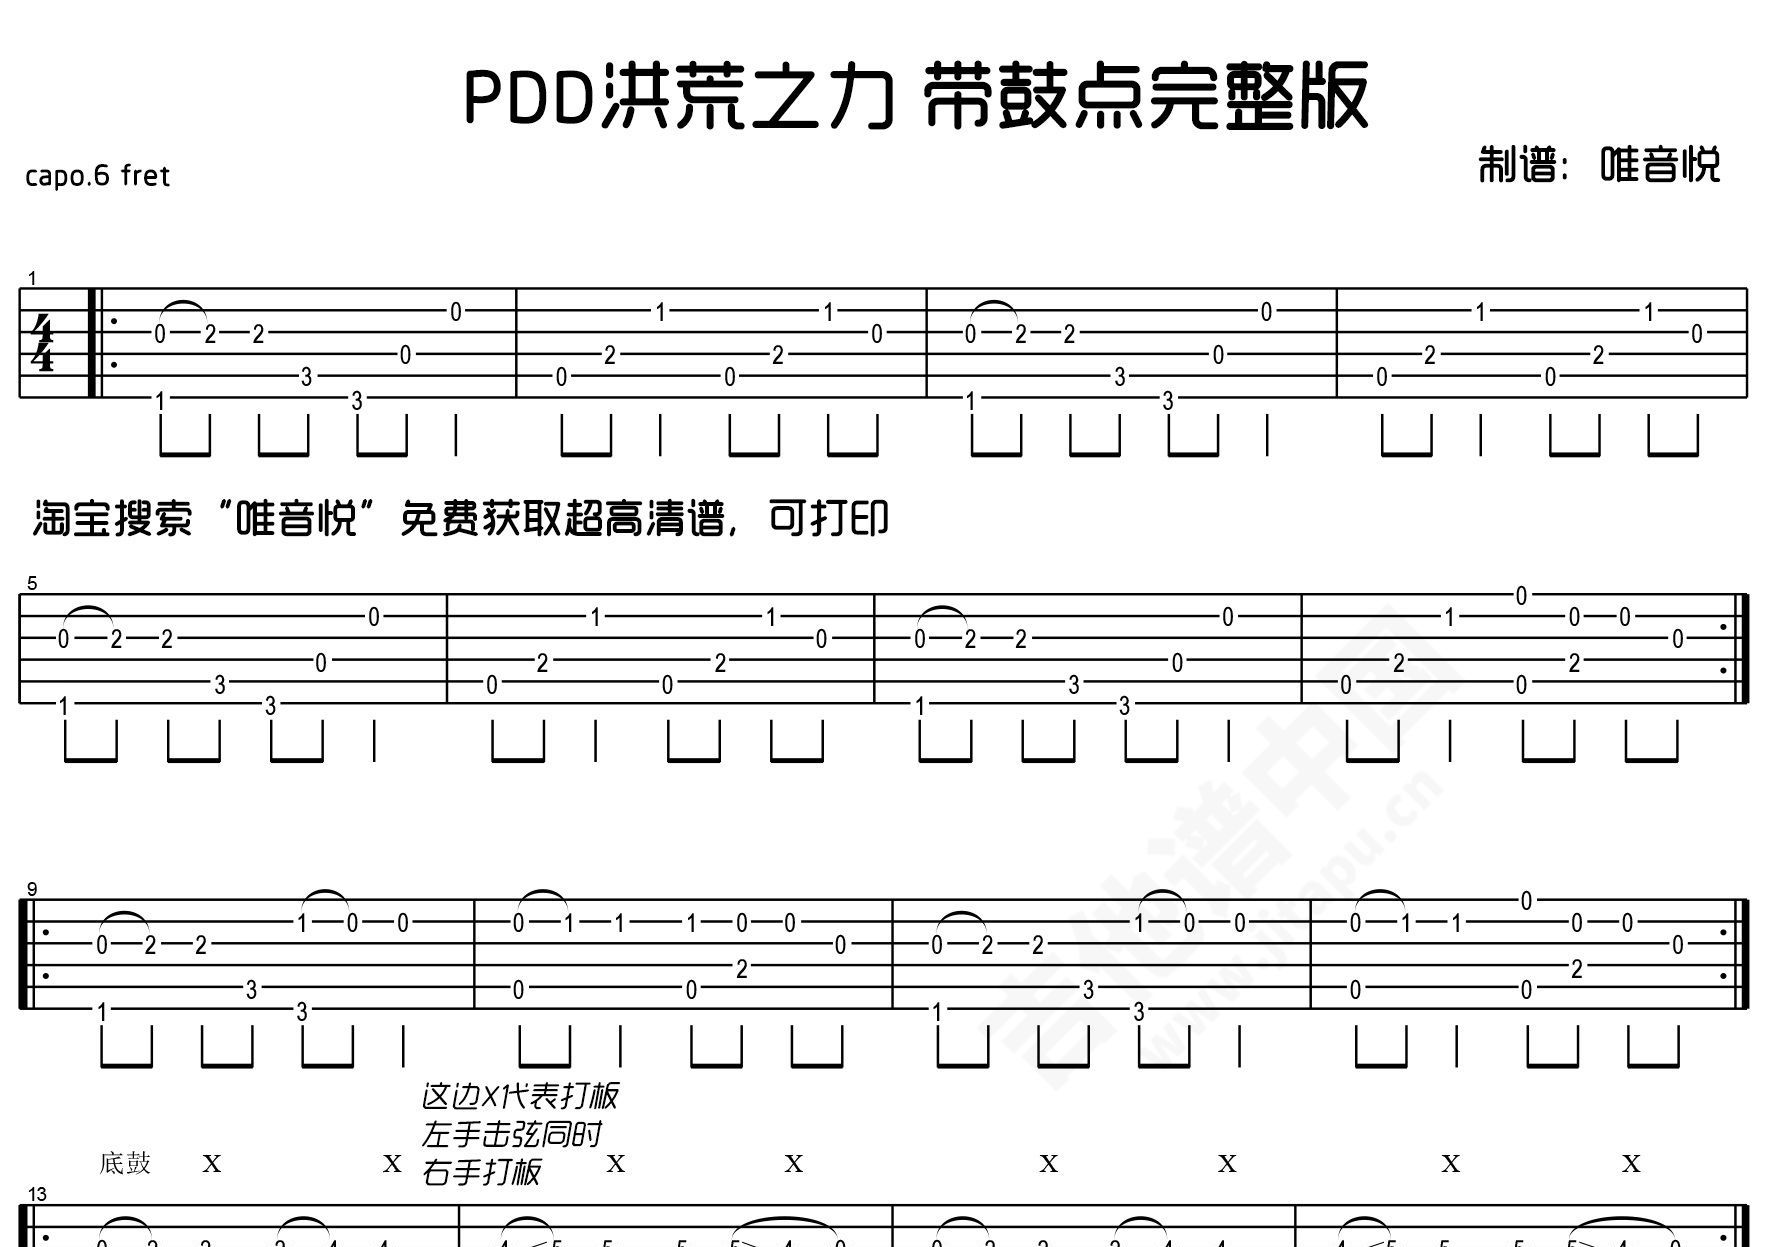 PDD洪荒之力-Hoaprox双手简谱预览-EOP在线乐谱架